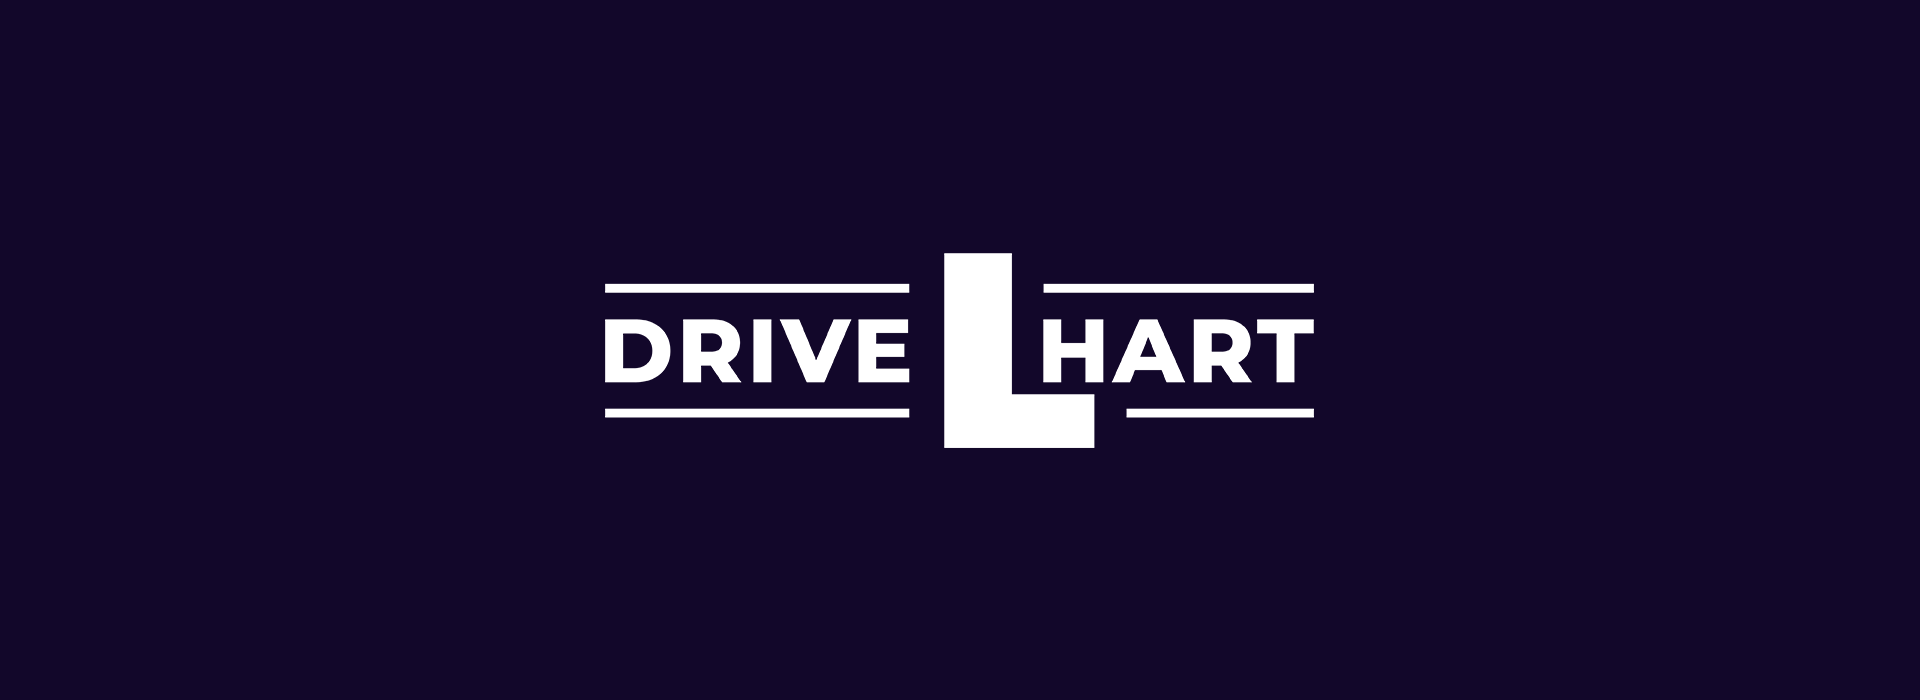 Drive Hart logo